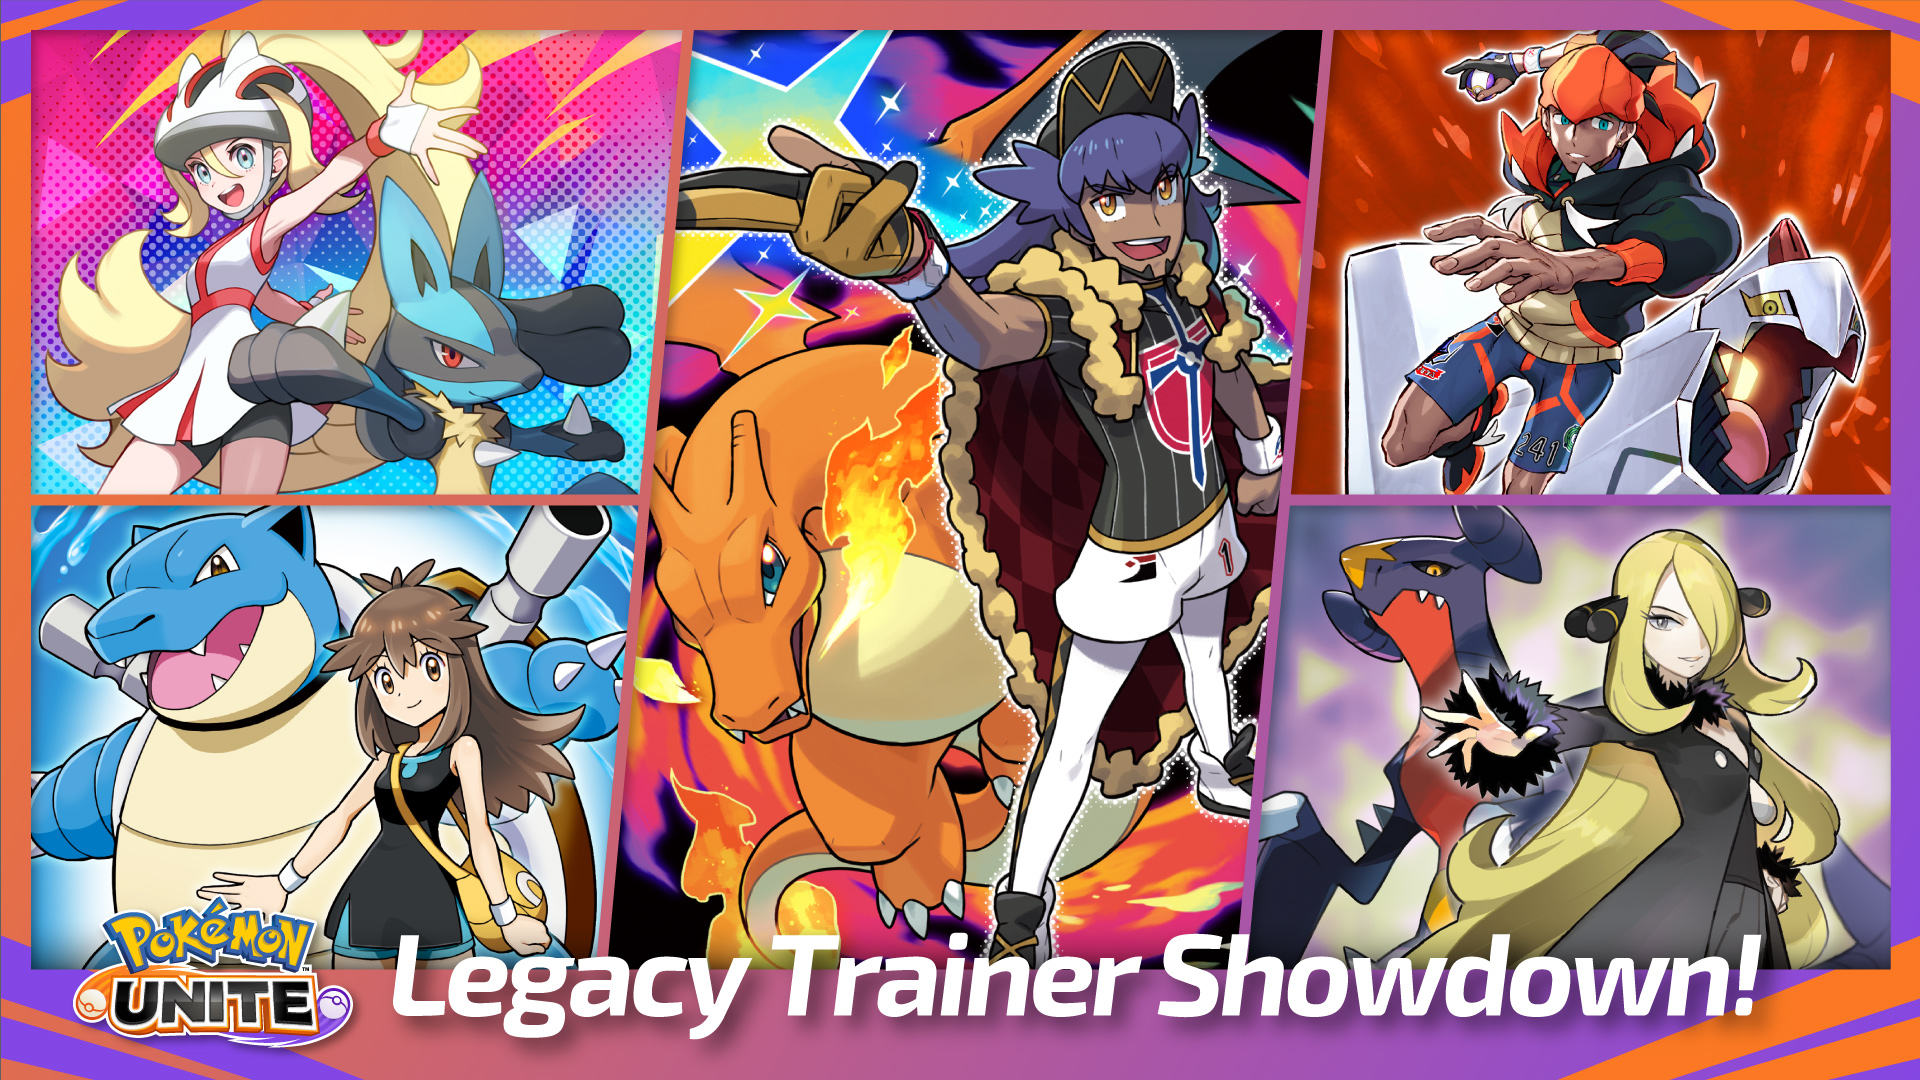 Pokémon Unite Legacy Trainer Showdown